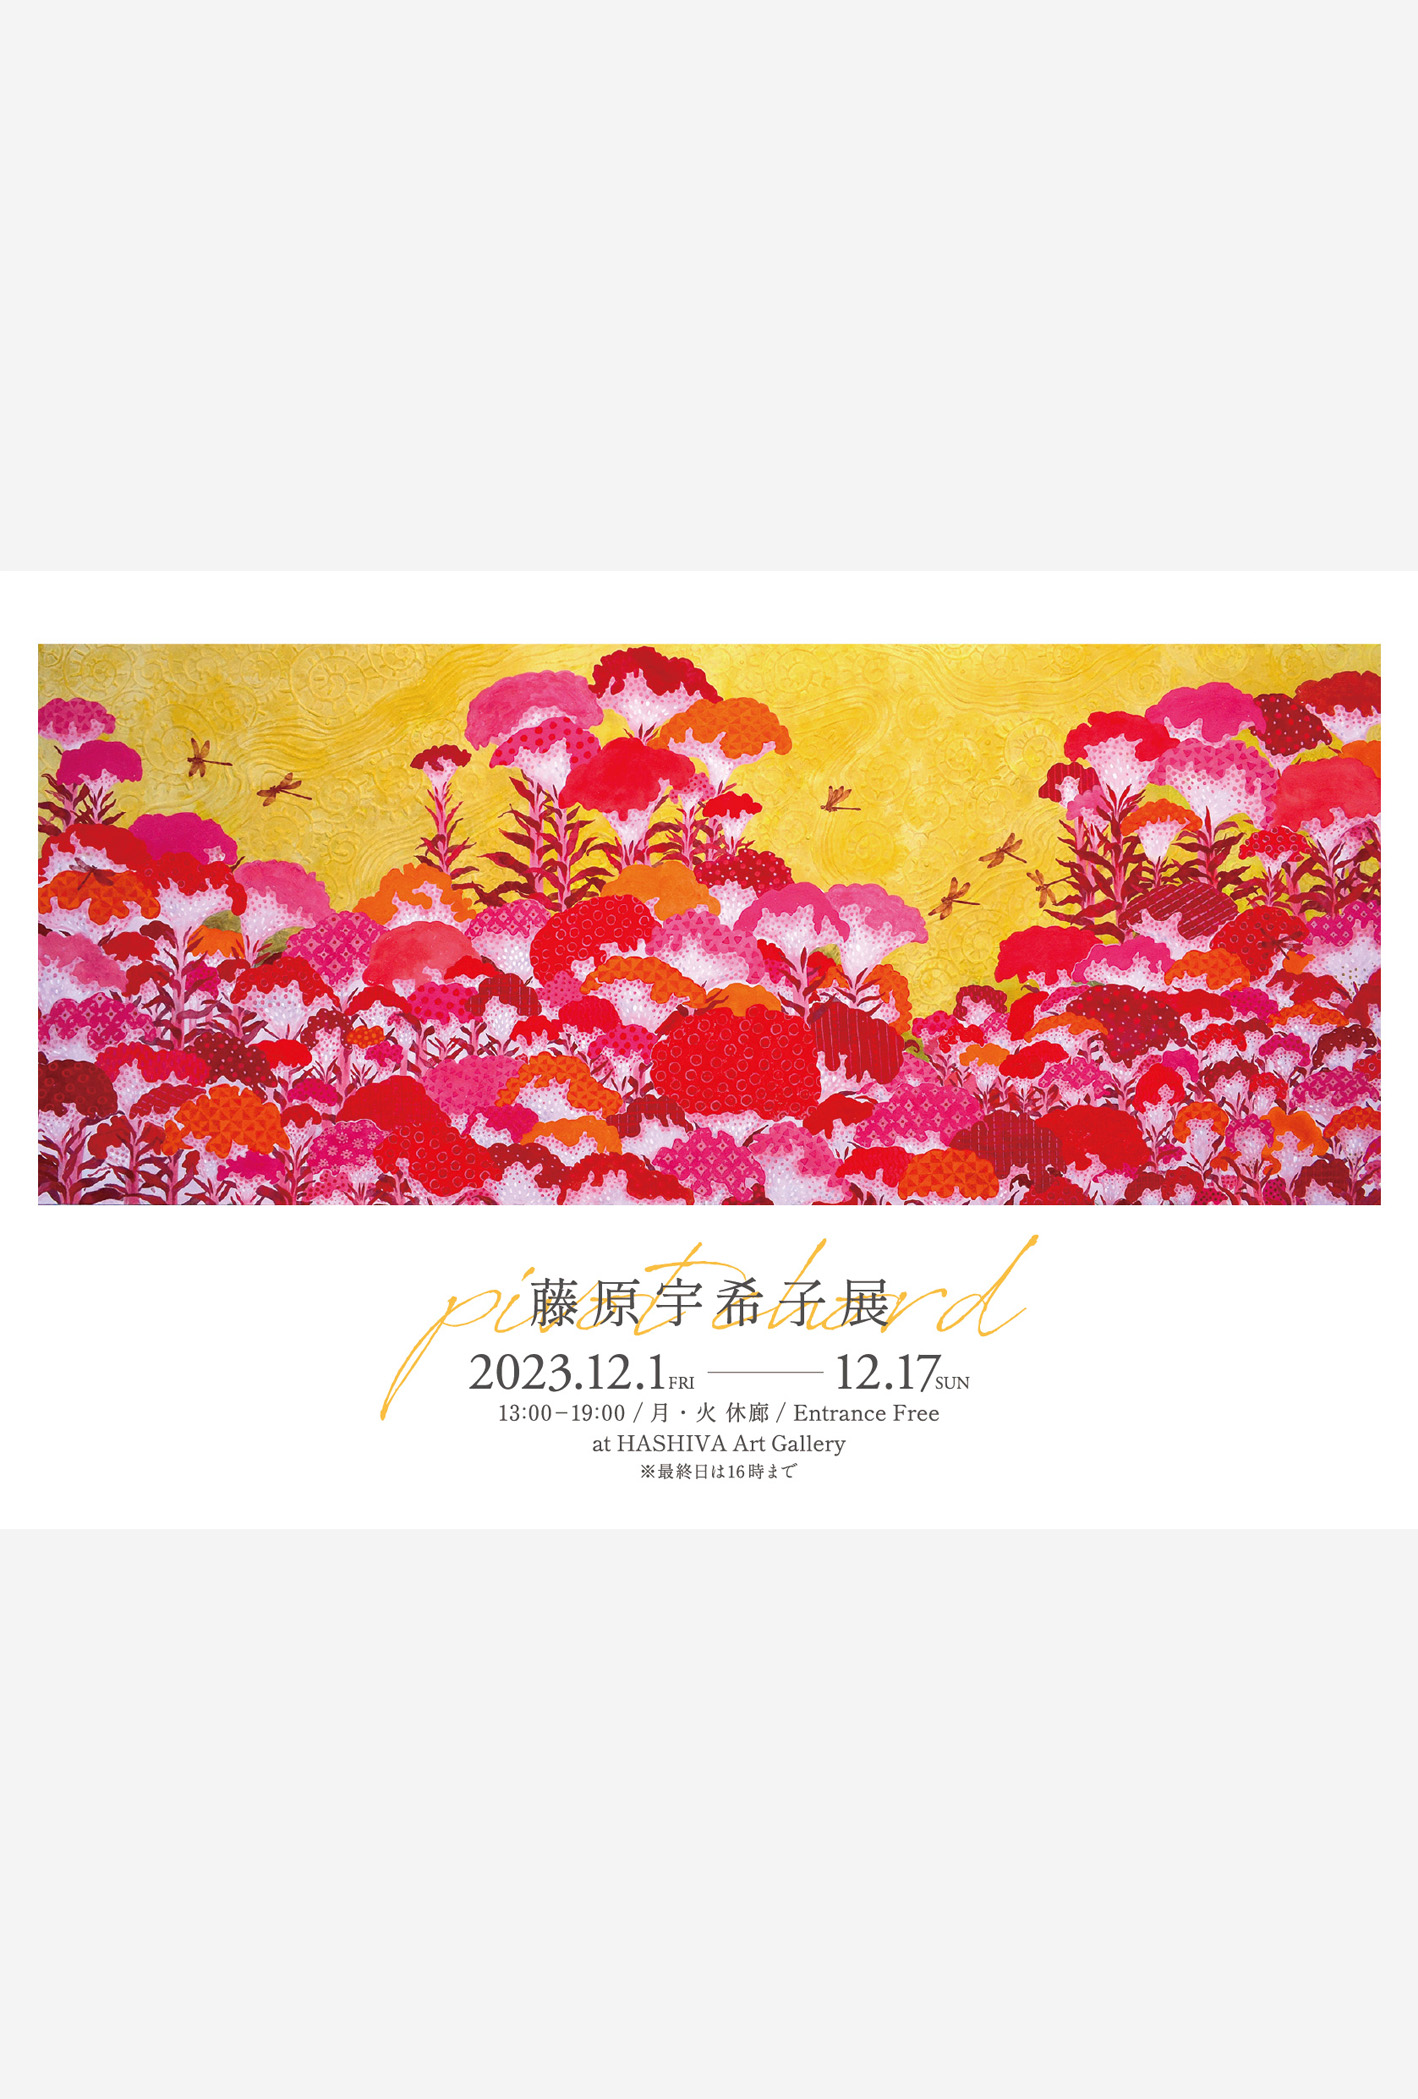 東京赤坂/六本木エリアで開催のアートショー。日本画家・藤原宇希子の個展「pivot chord」のメインビジュアル